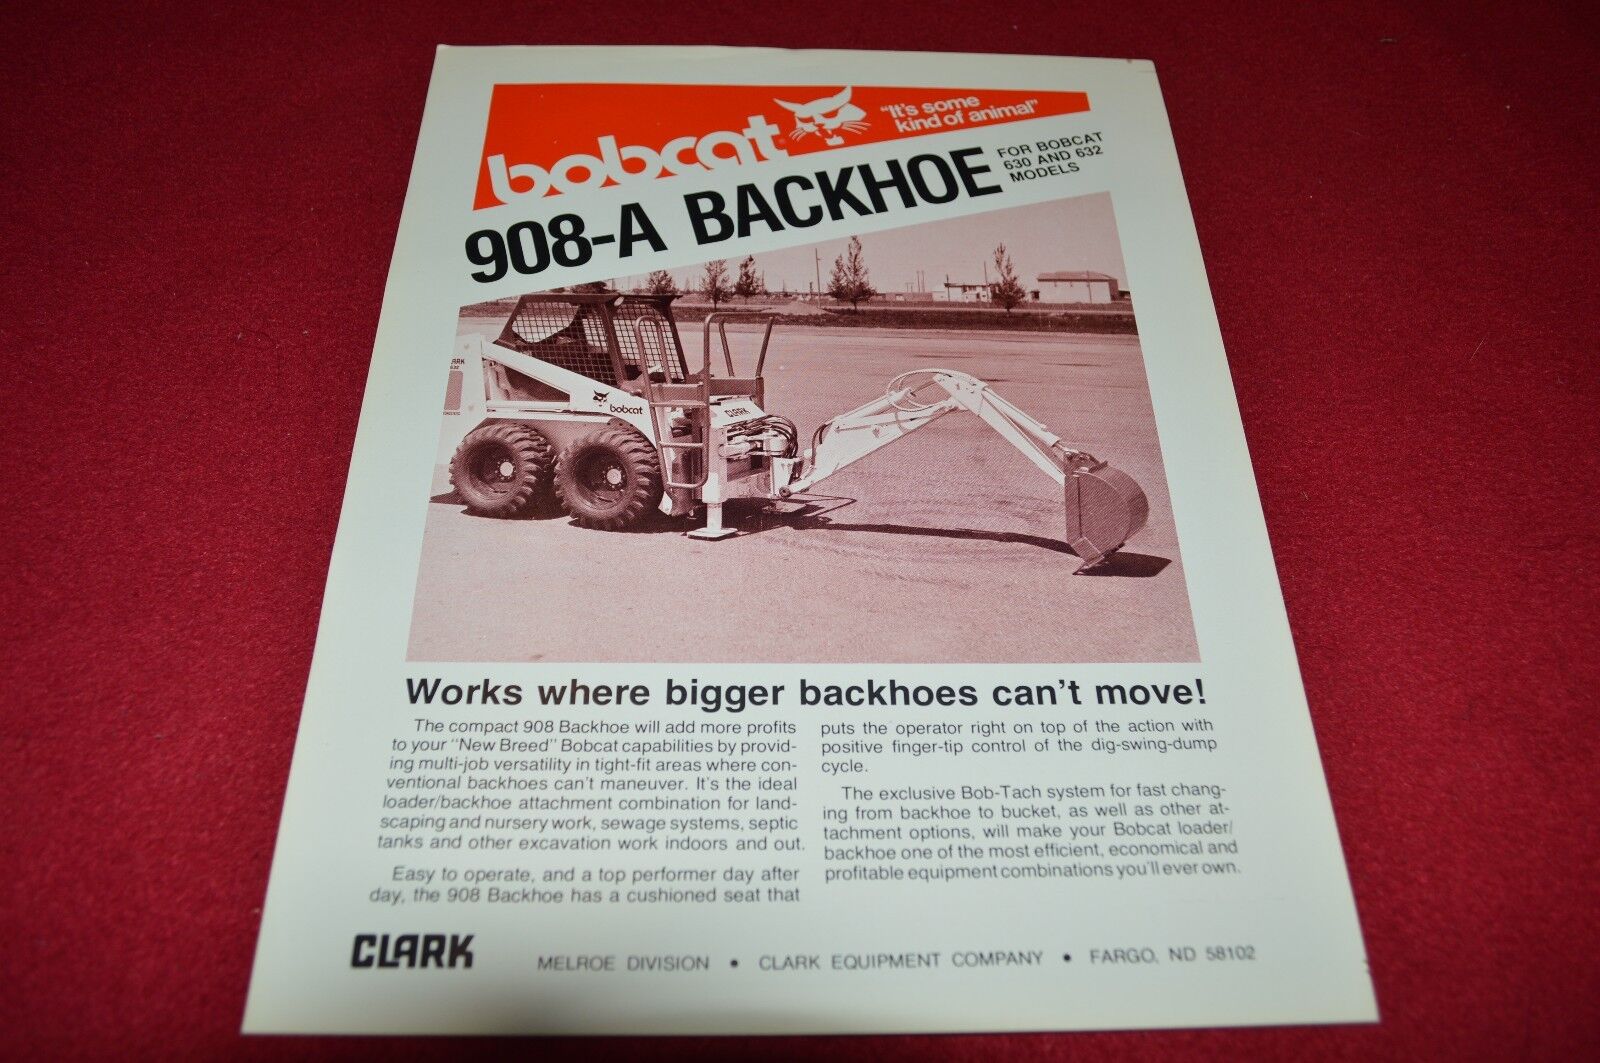 Bobcat 908-A Backhoe for 630 632 Skid Steer Loaders Dealers Brochure LCOH 